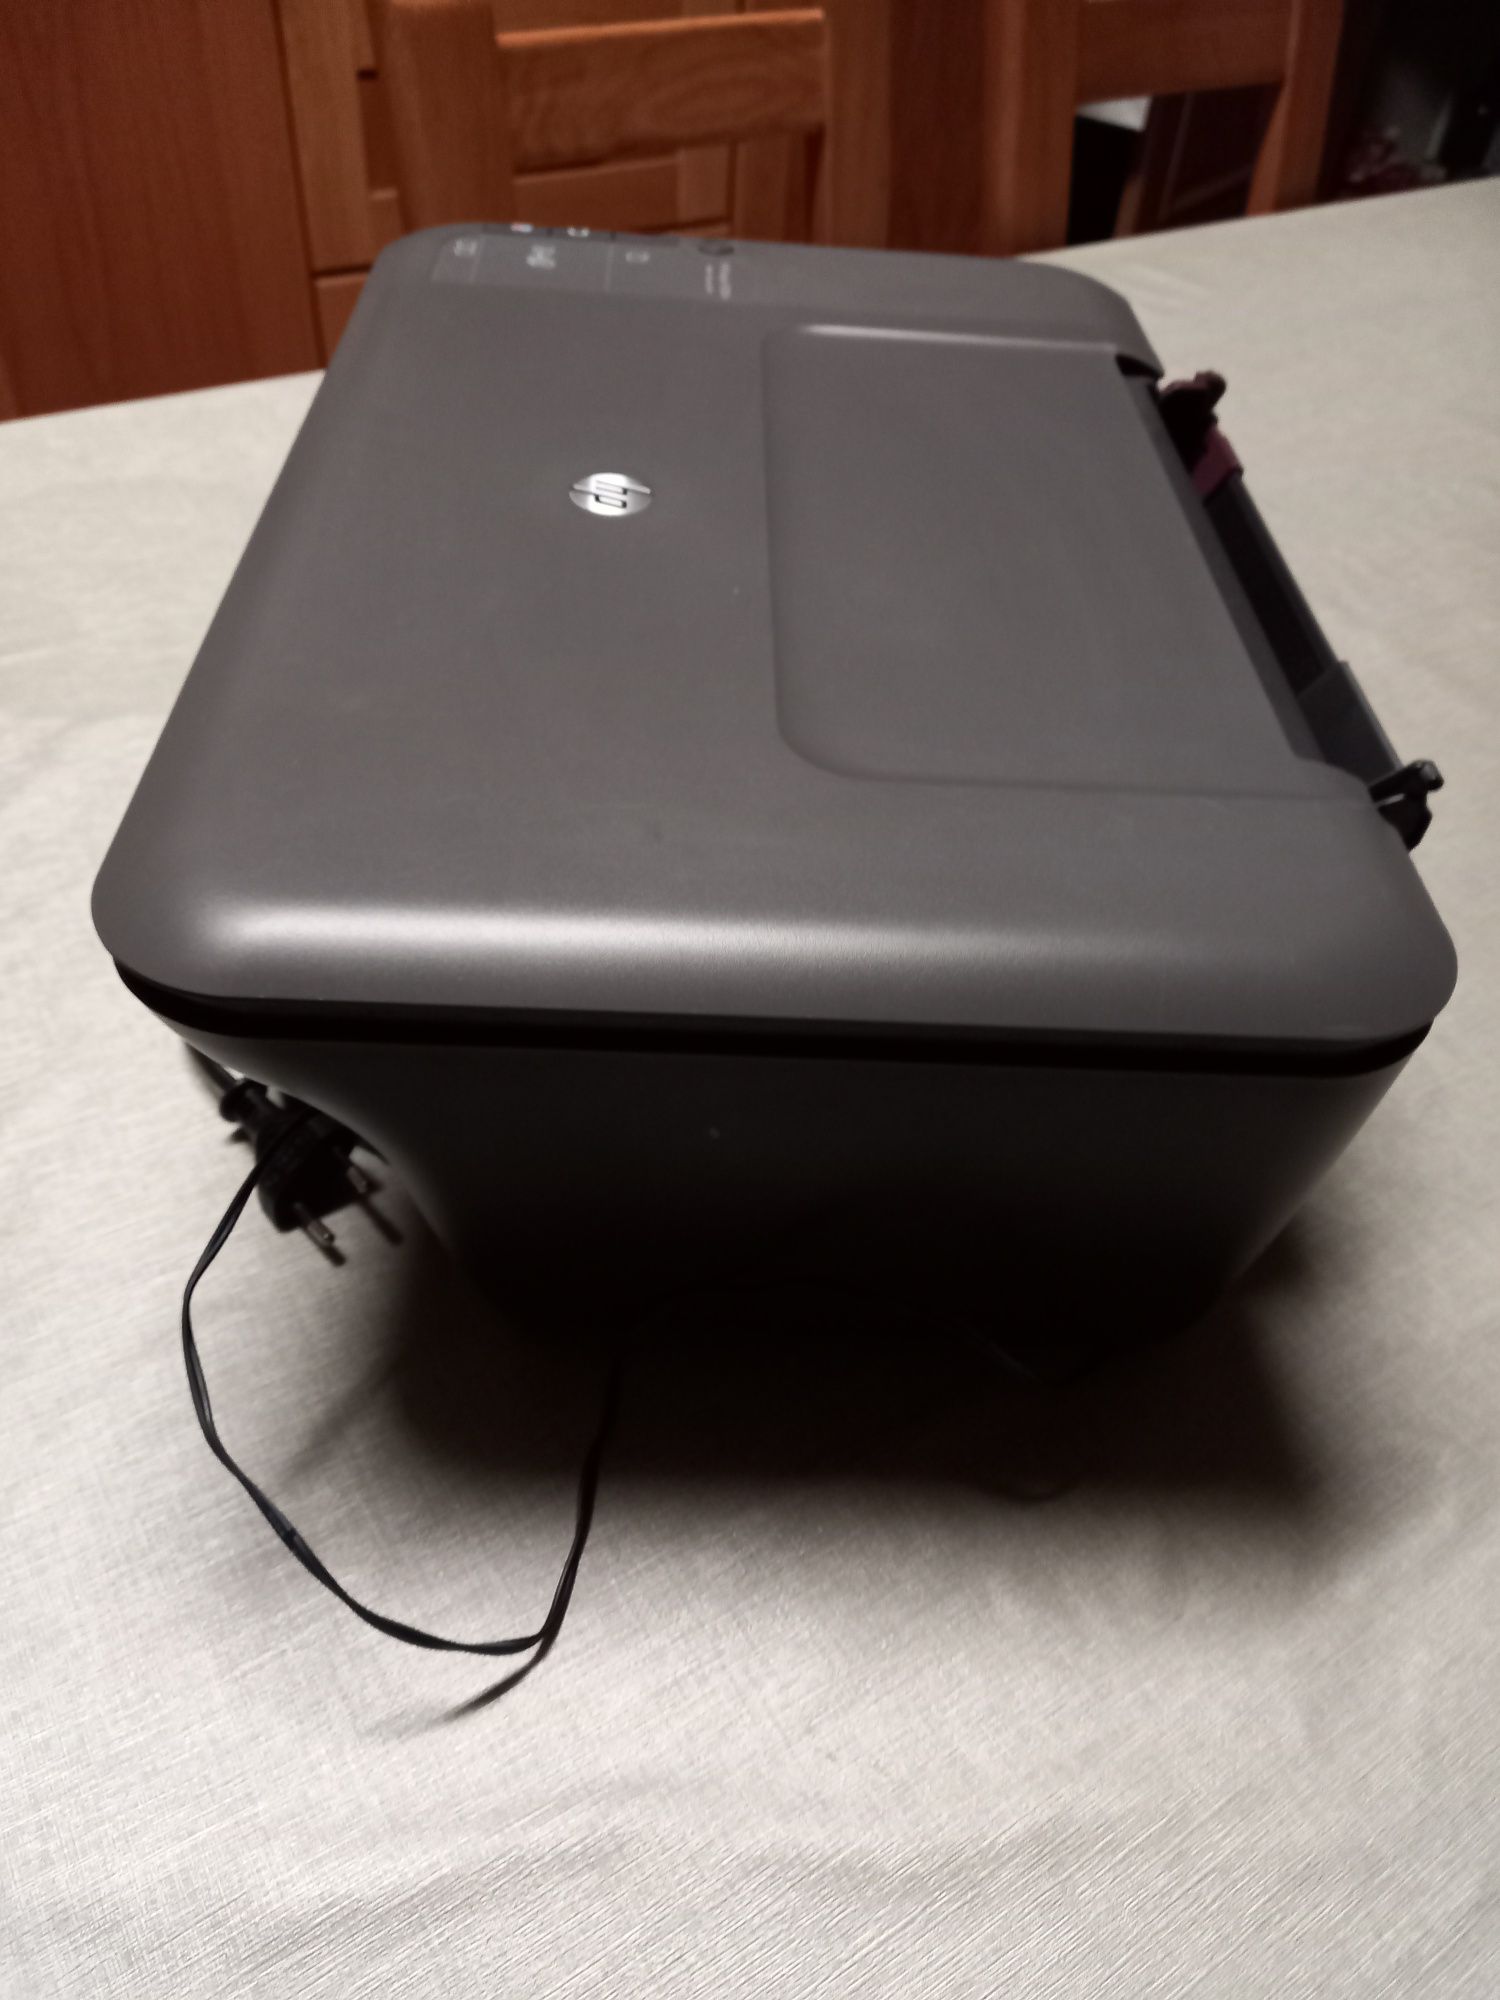 Impressora  HP  a funcionar, digitaliza e fotocopia